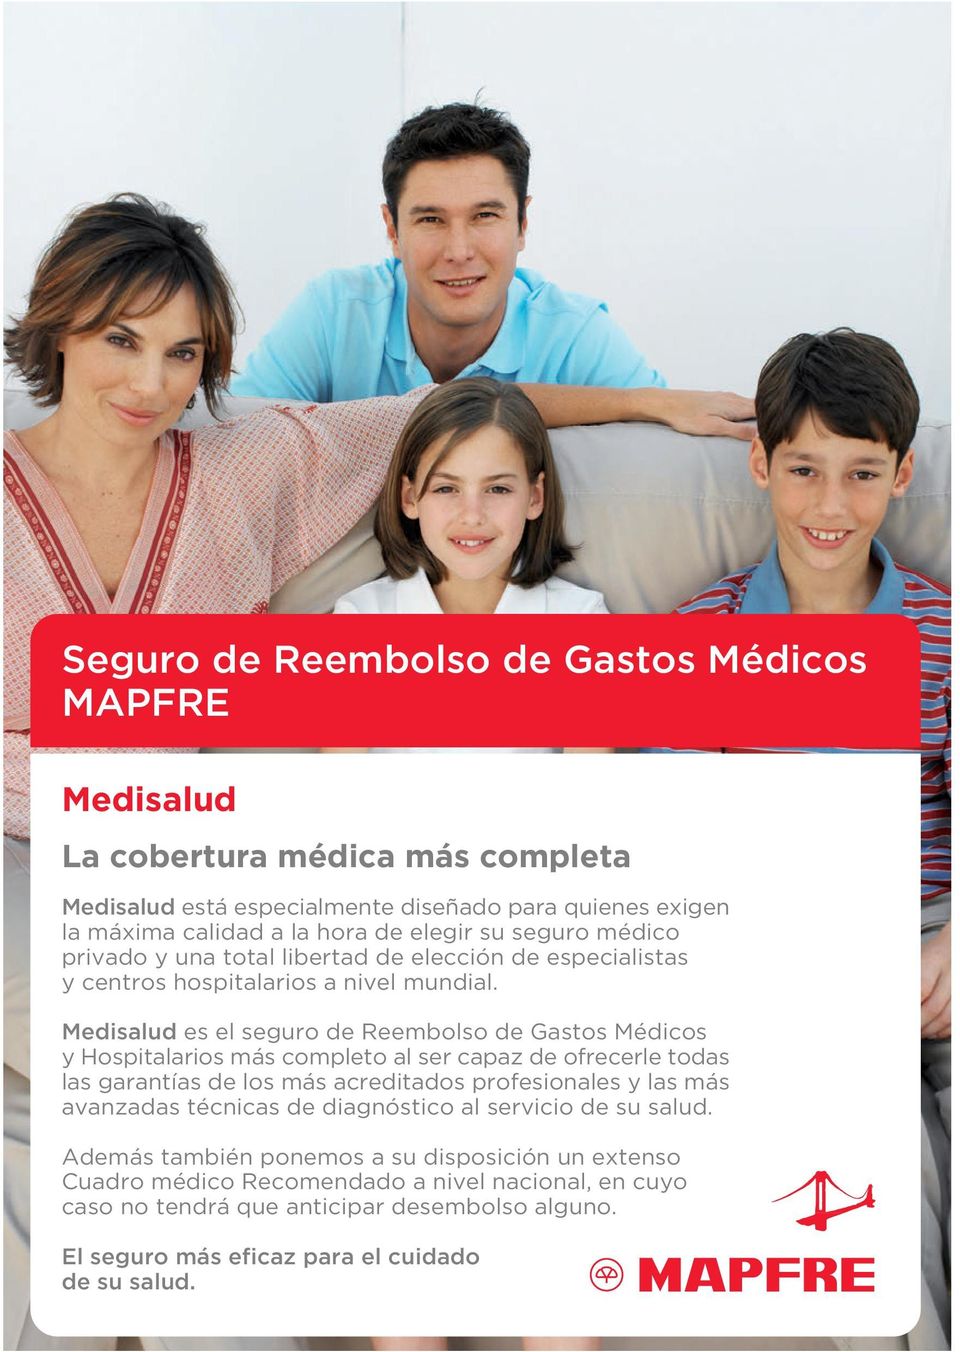 Medisalud es el seguro de Reembolso de Gastos Médicos y Hospitalarios más completo al ser capaz de ofrecerle todas las garantías de los más acreditados profesionales y las más